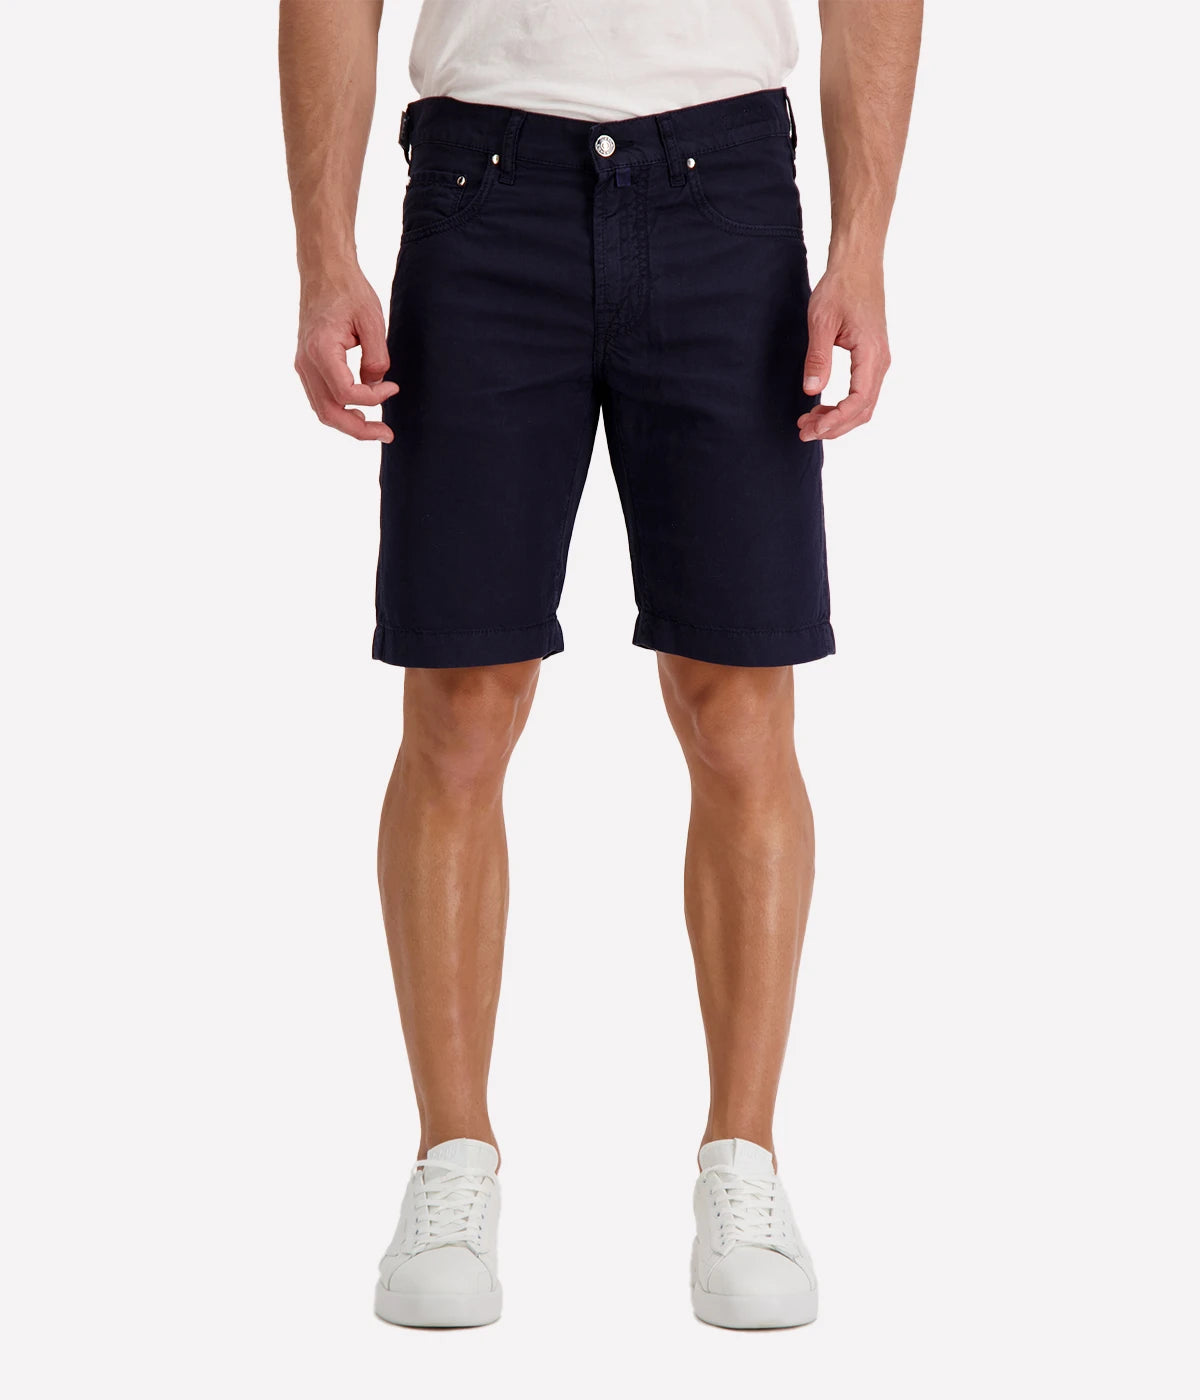 Nicolas Bermuda 5 Pocket Slim Short in Navy Blue